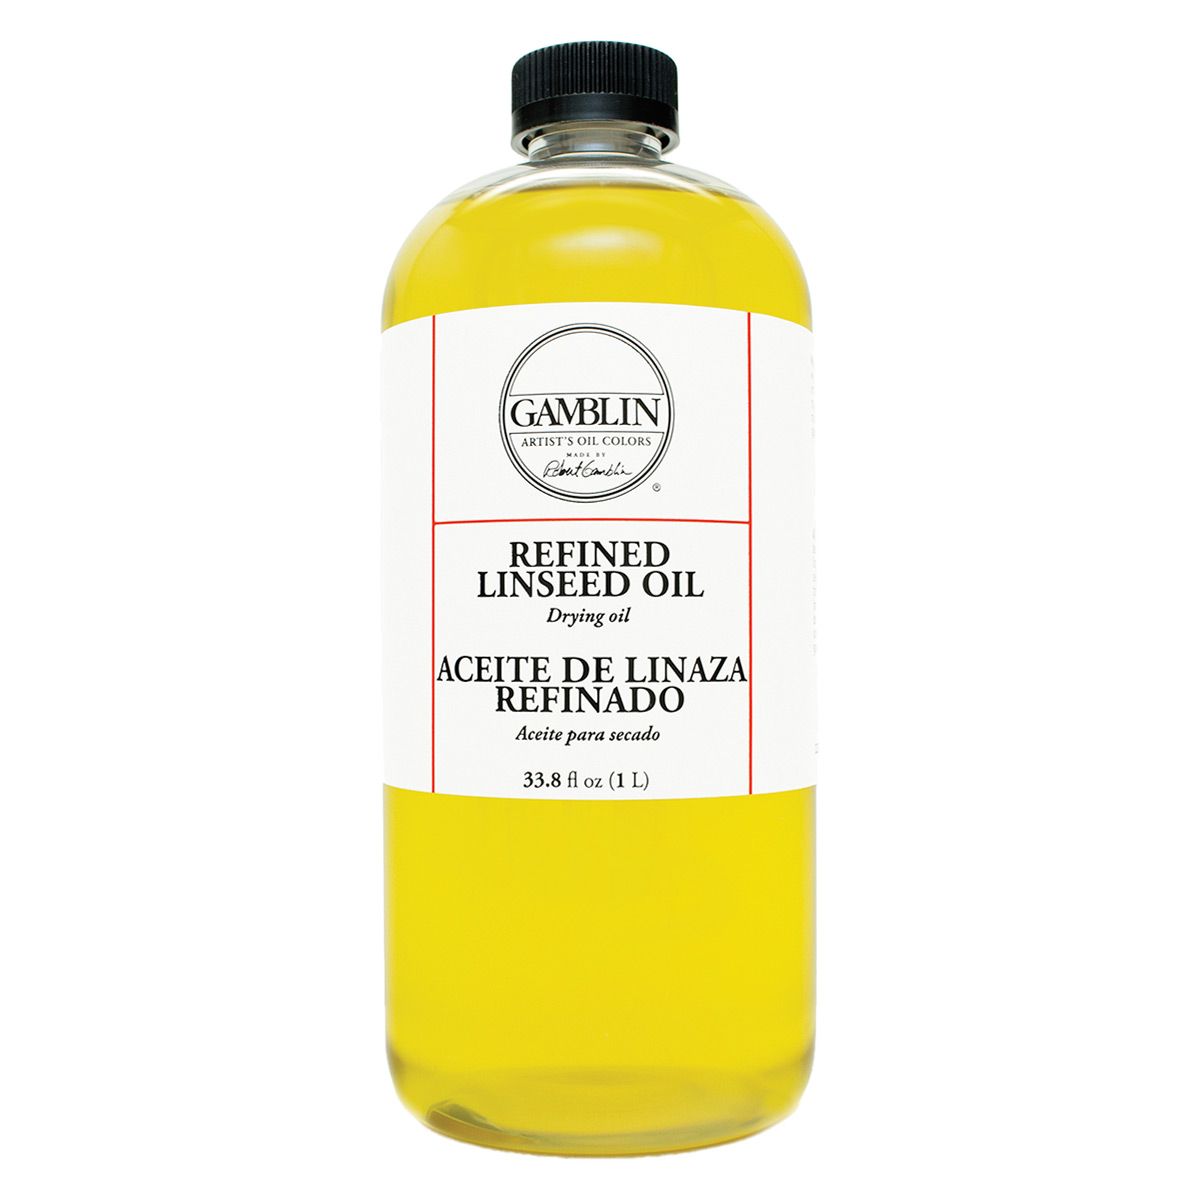 Gamblin Refined Linseed Oil 33.8oz (1L) Bottle